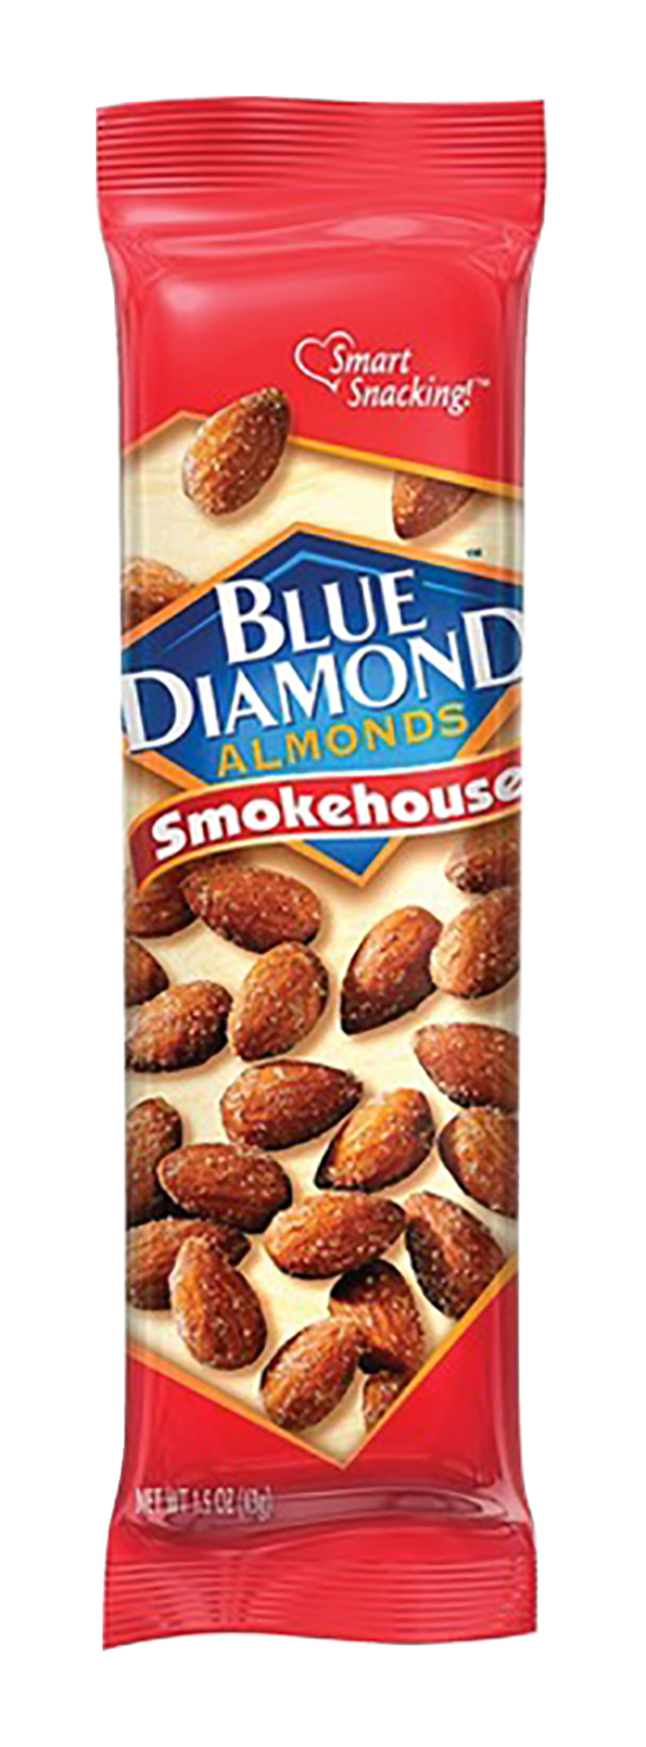 BlueDiamond Smokehouse Almonds, Item Number 2050005